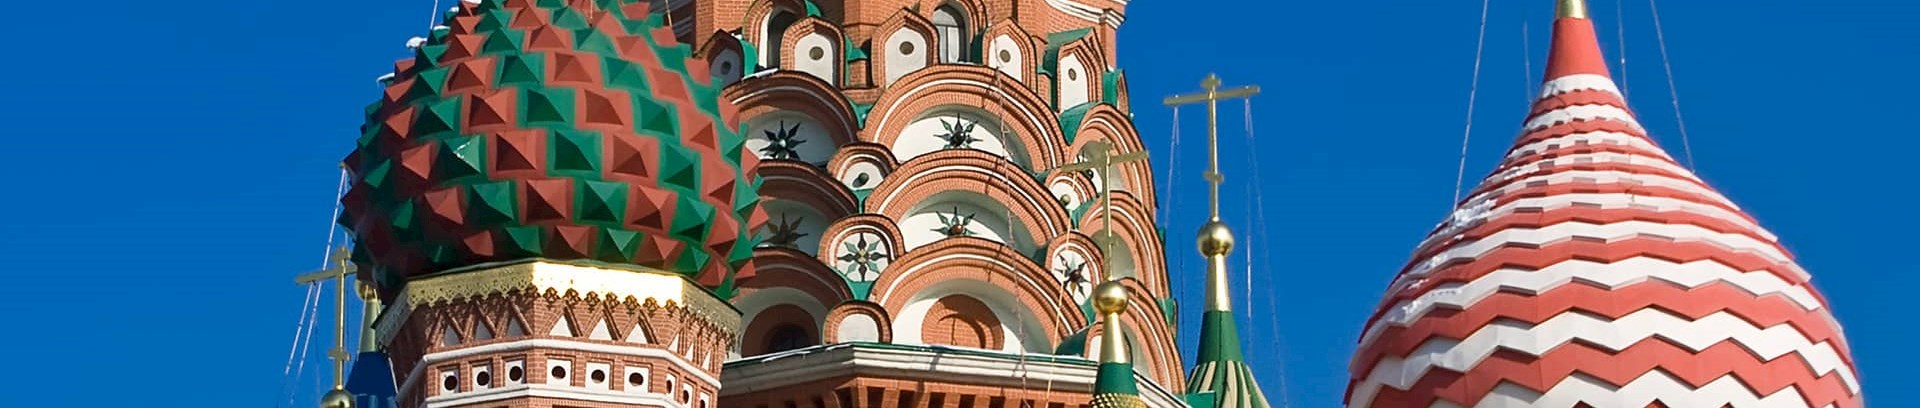 Billede af russisk kirke med løgkupelspir